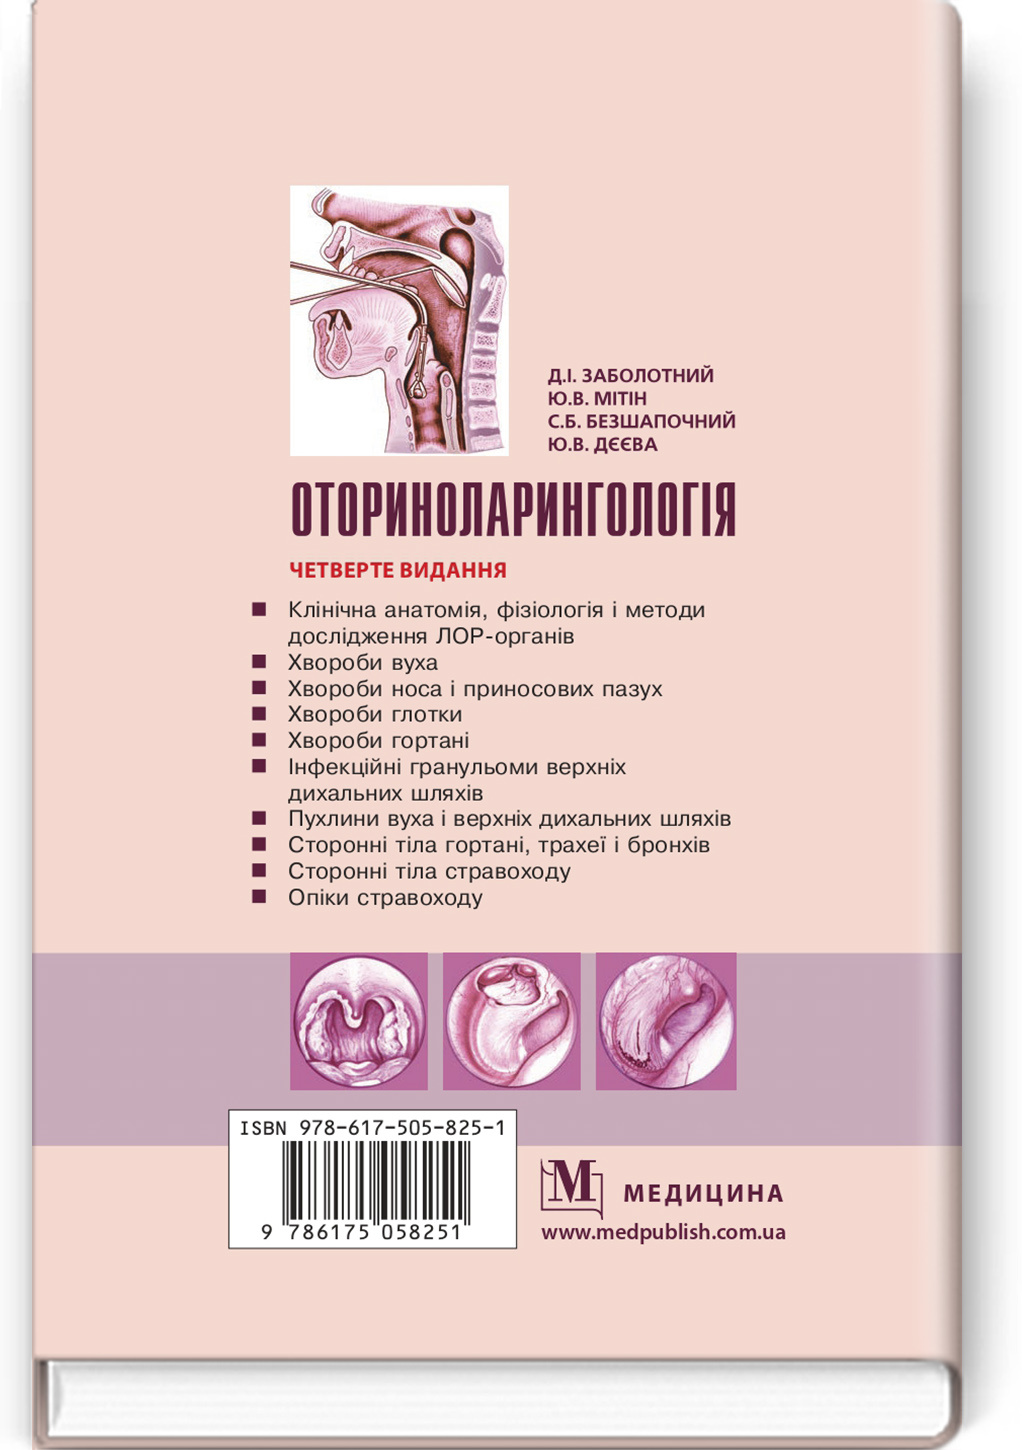 Оториноларингологія: підручник. Автор — Д.І.. 